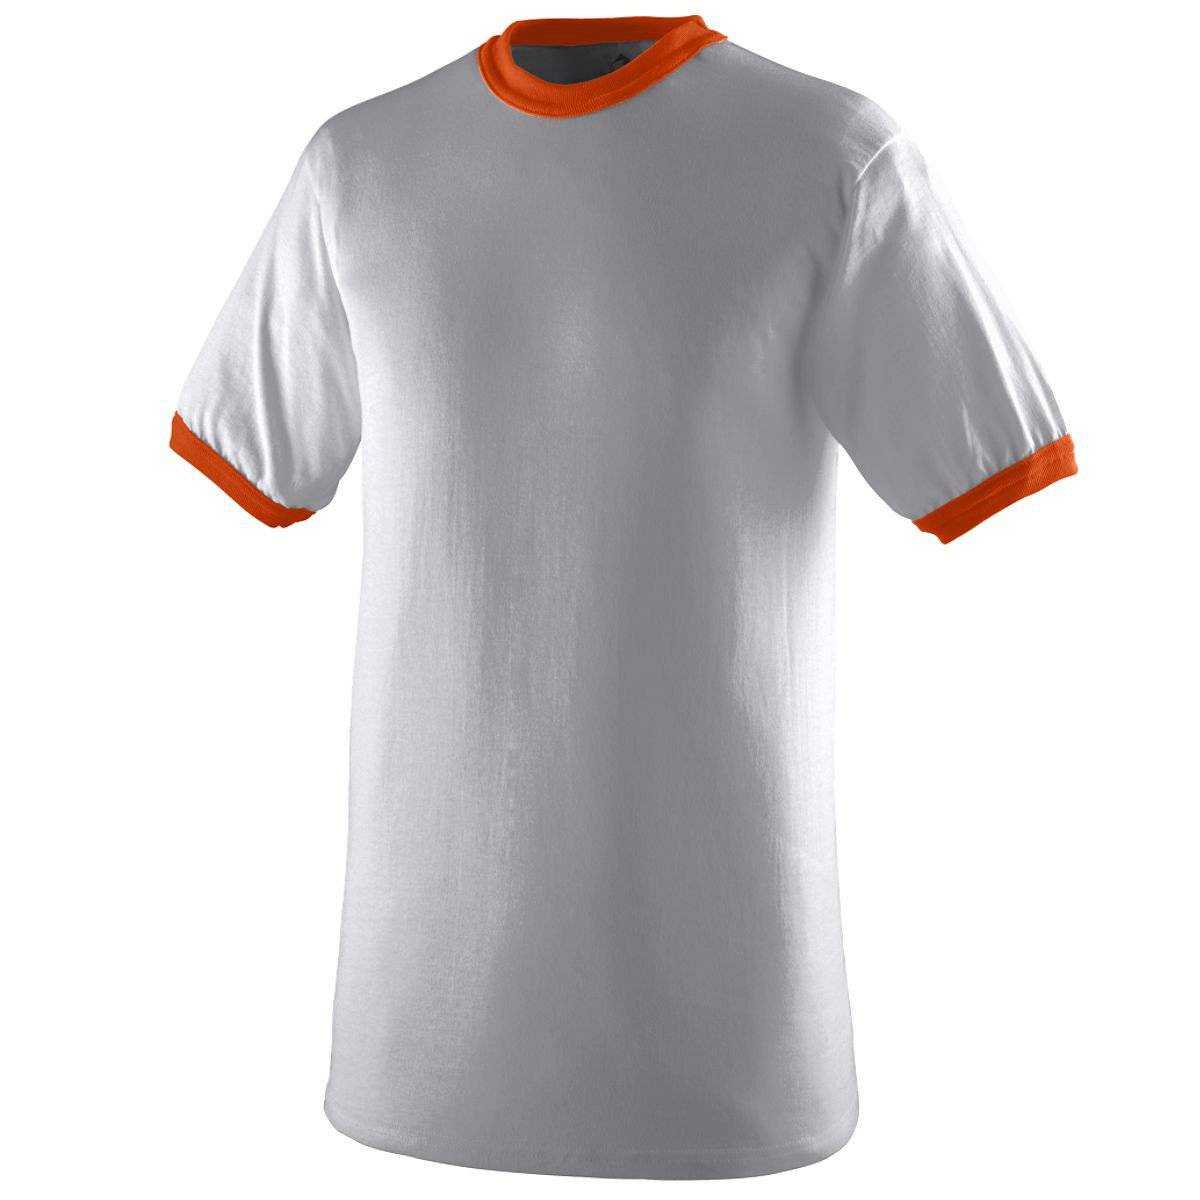 Augusta 710 Ringer T-Shirt - Light Gray Orange - HIT a Double